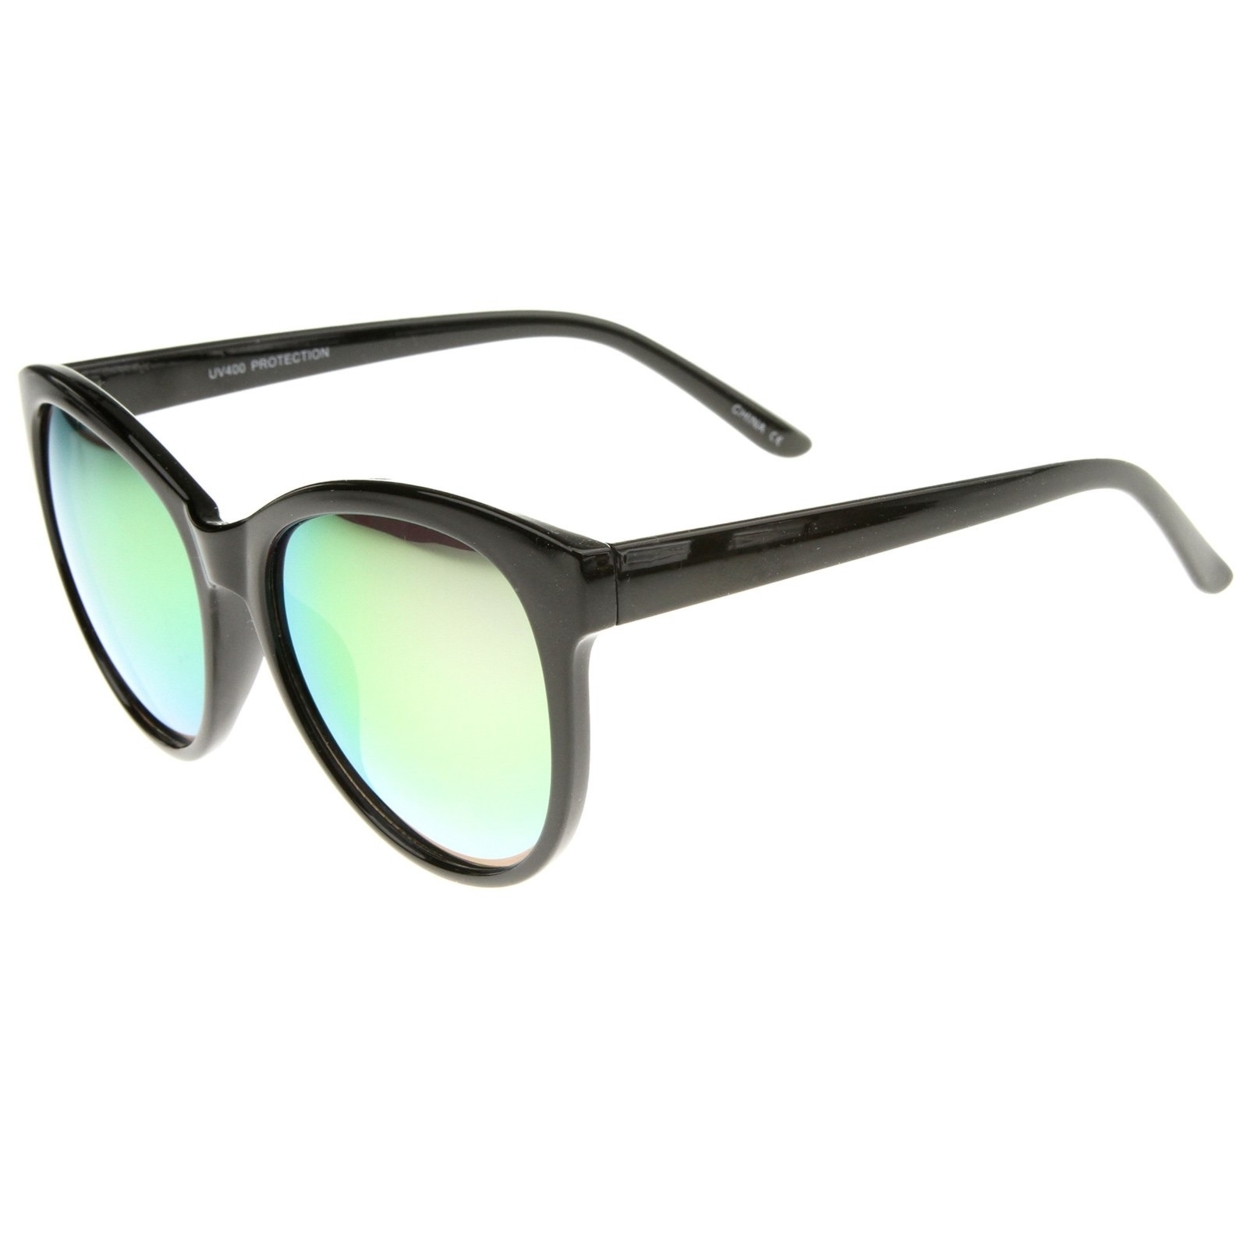 Women's Horn Rimmed Color Mirror Lens Oversized Cat Eye Sunglasses 58mm - Smoke / Orange Mirror